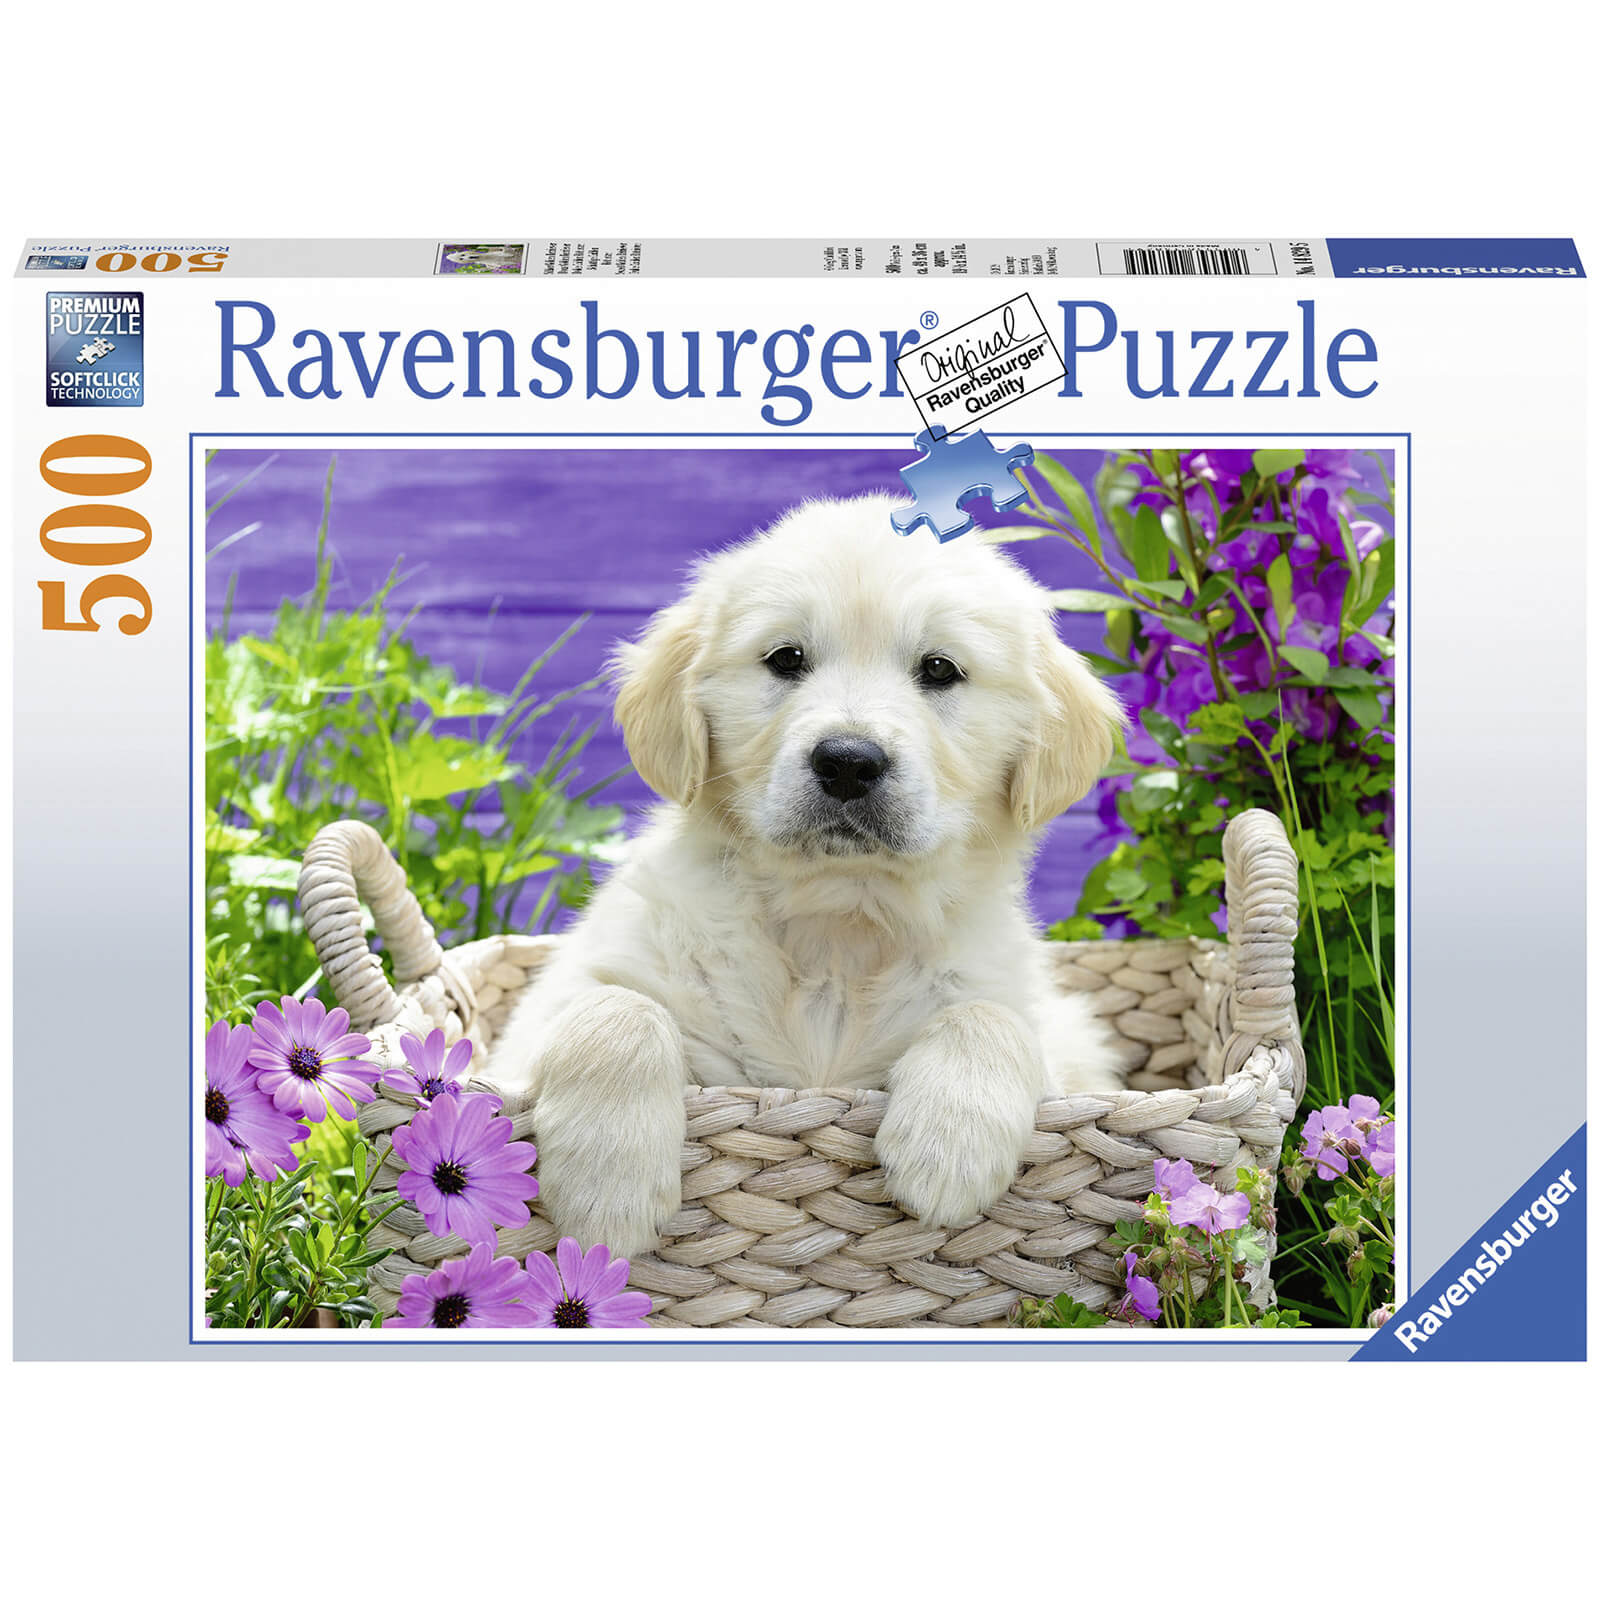 Ravensburger Sweet Golden Retriever 500 piece Jigsaw Puzzle